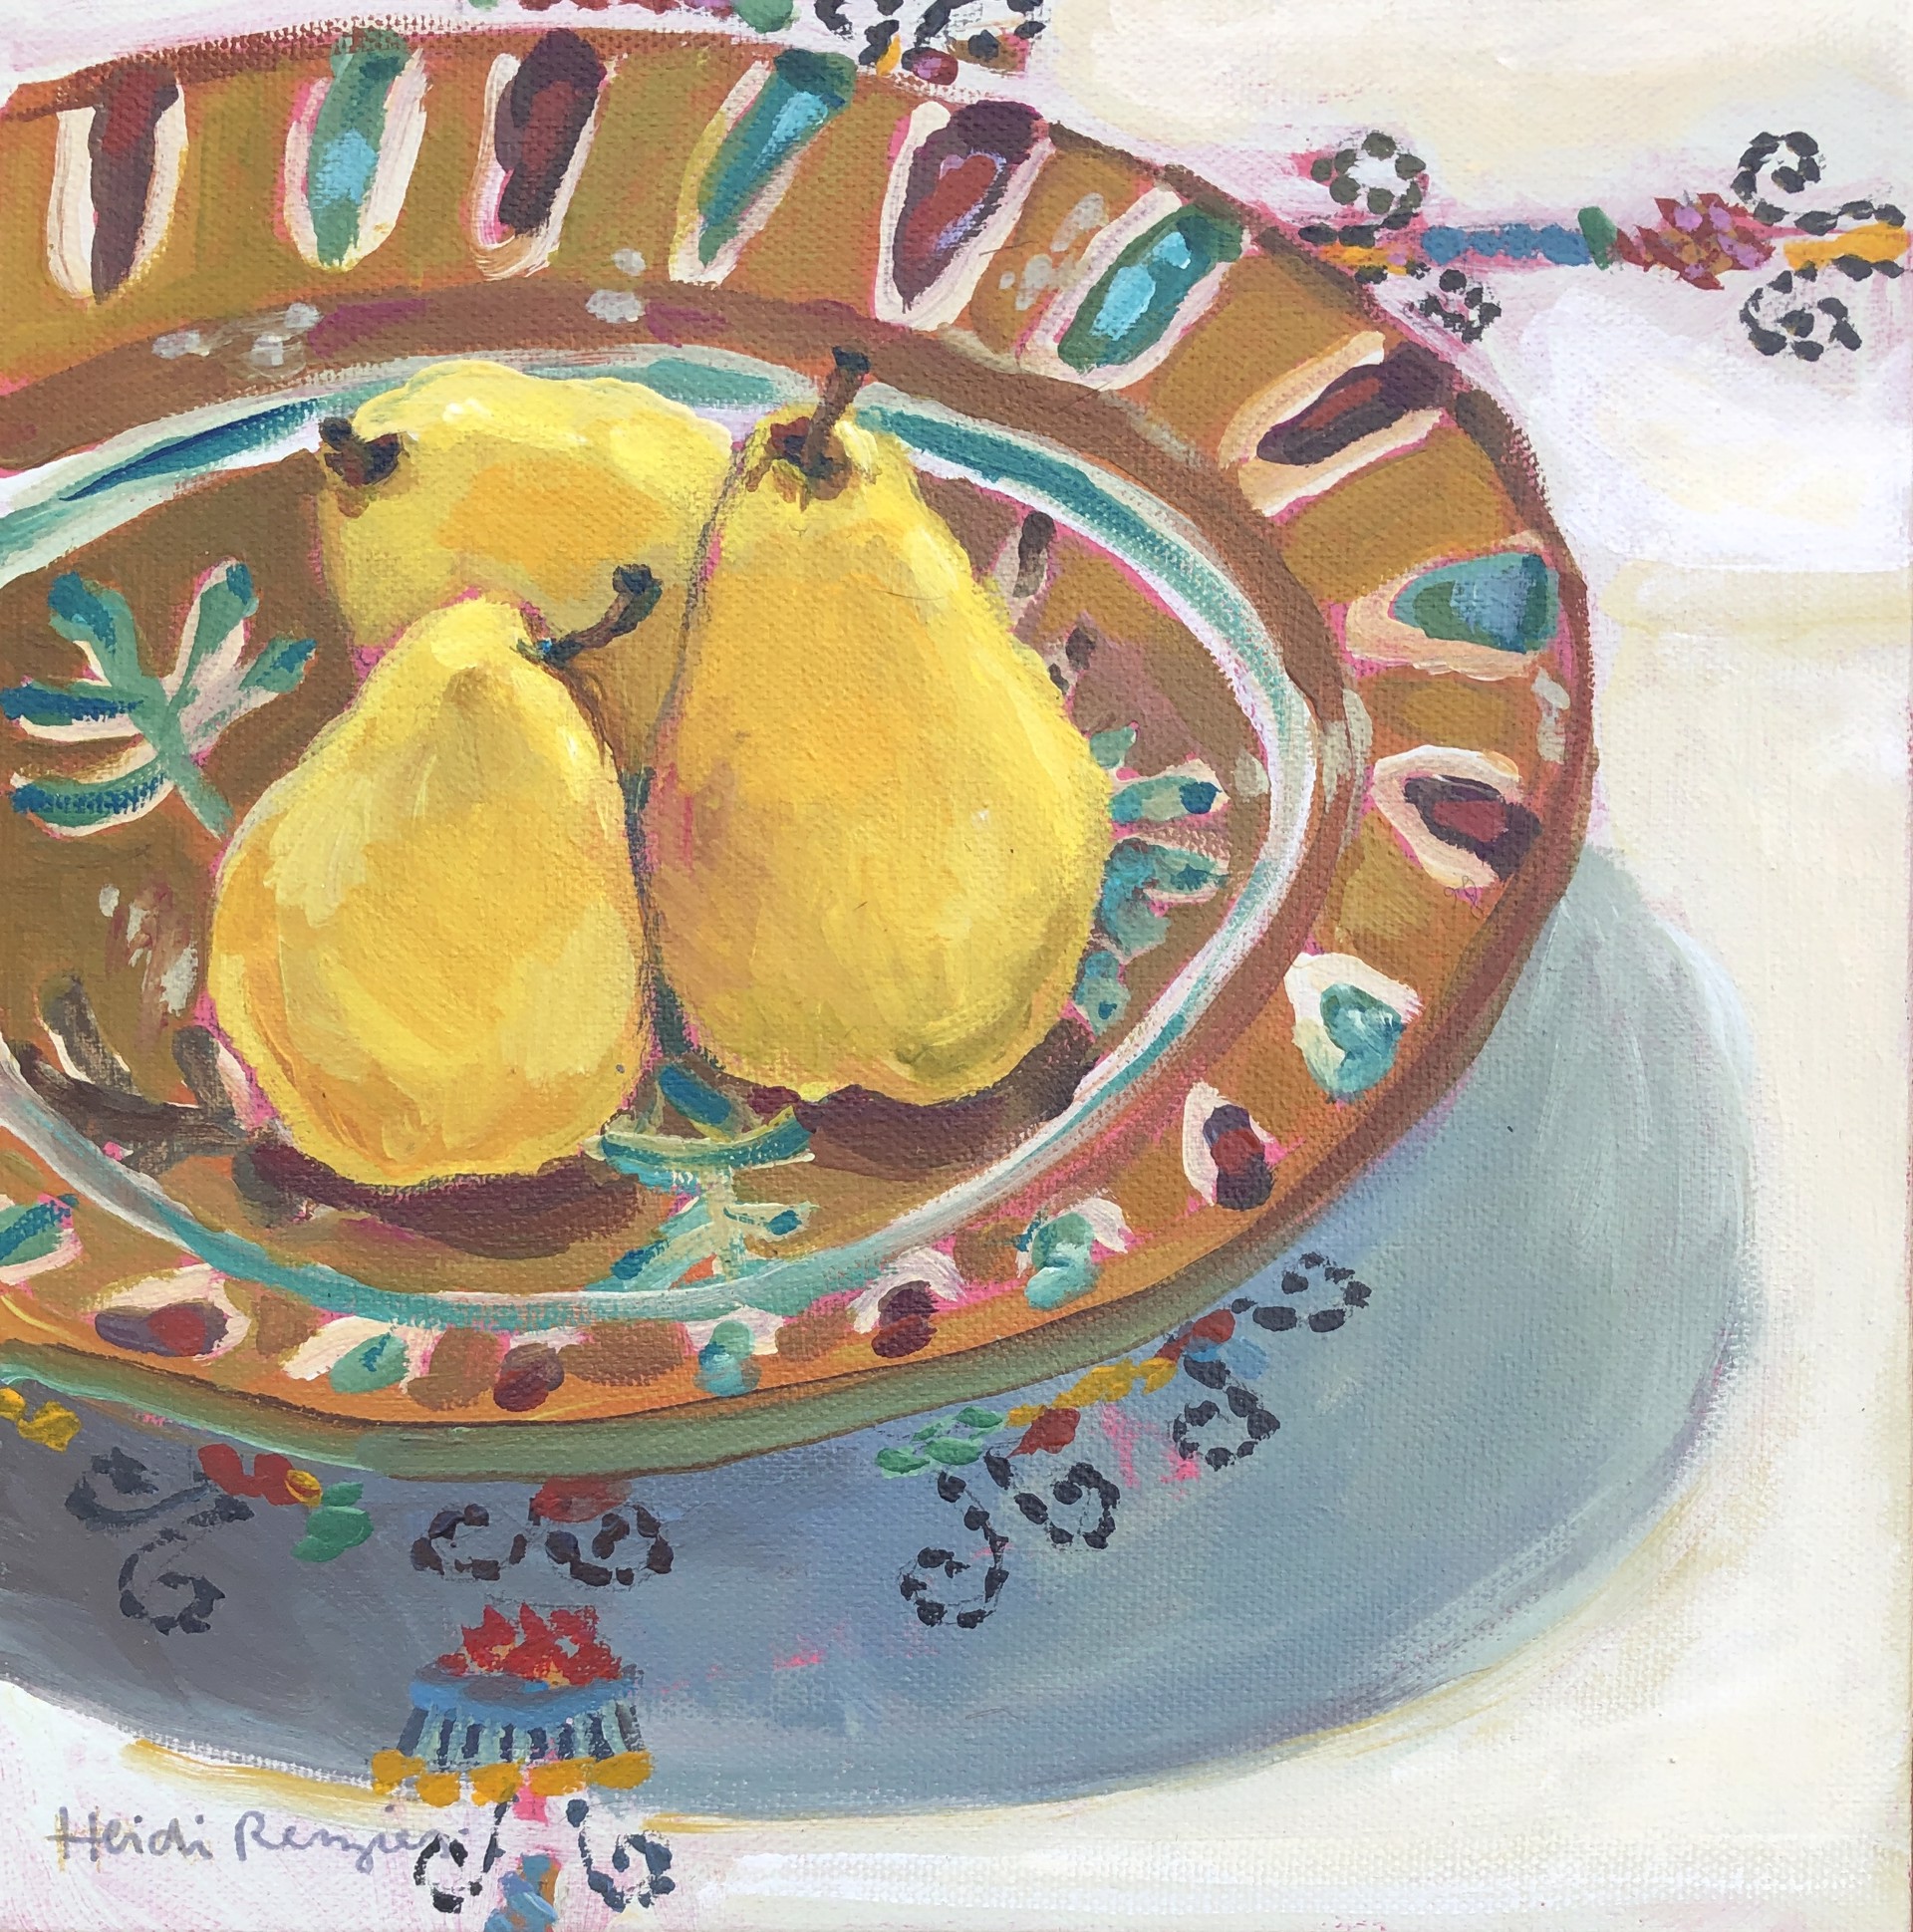 Three Pears, December by Heidi Reszies